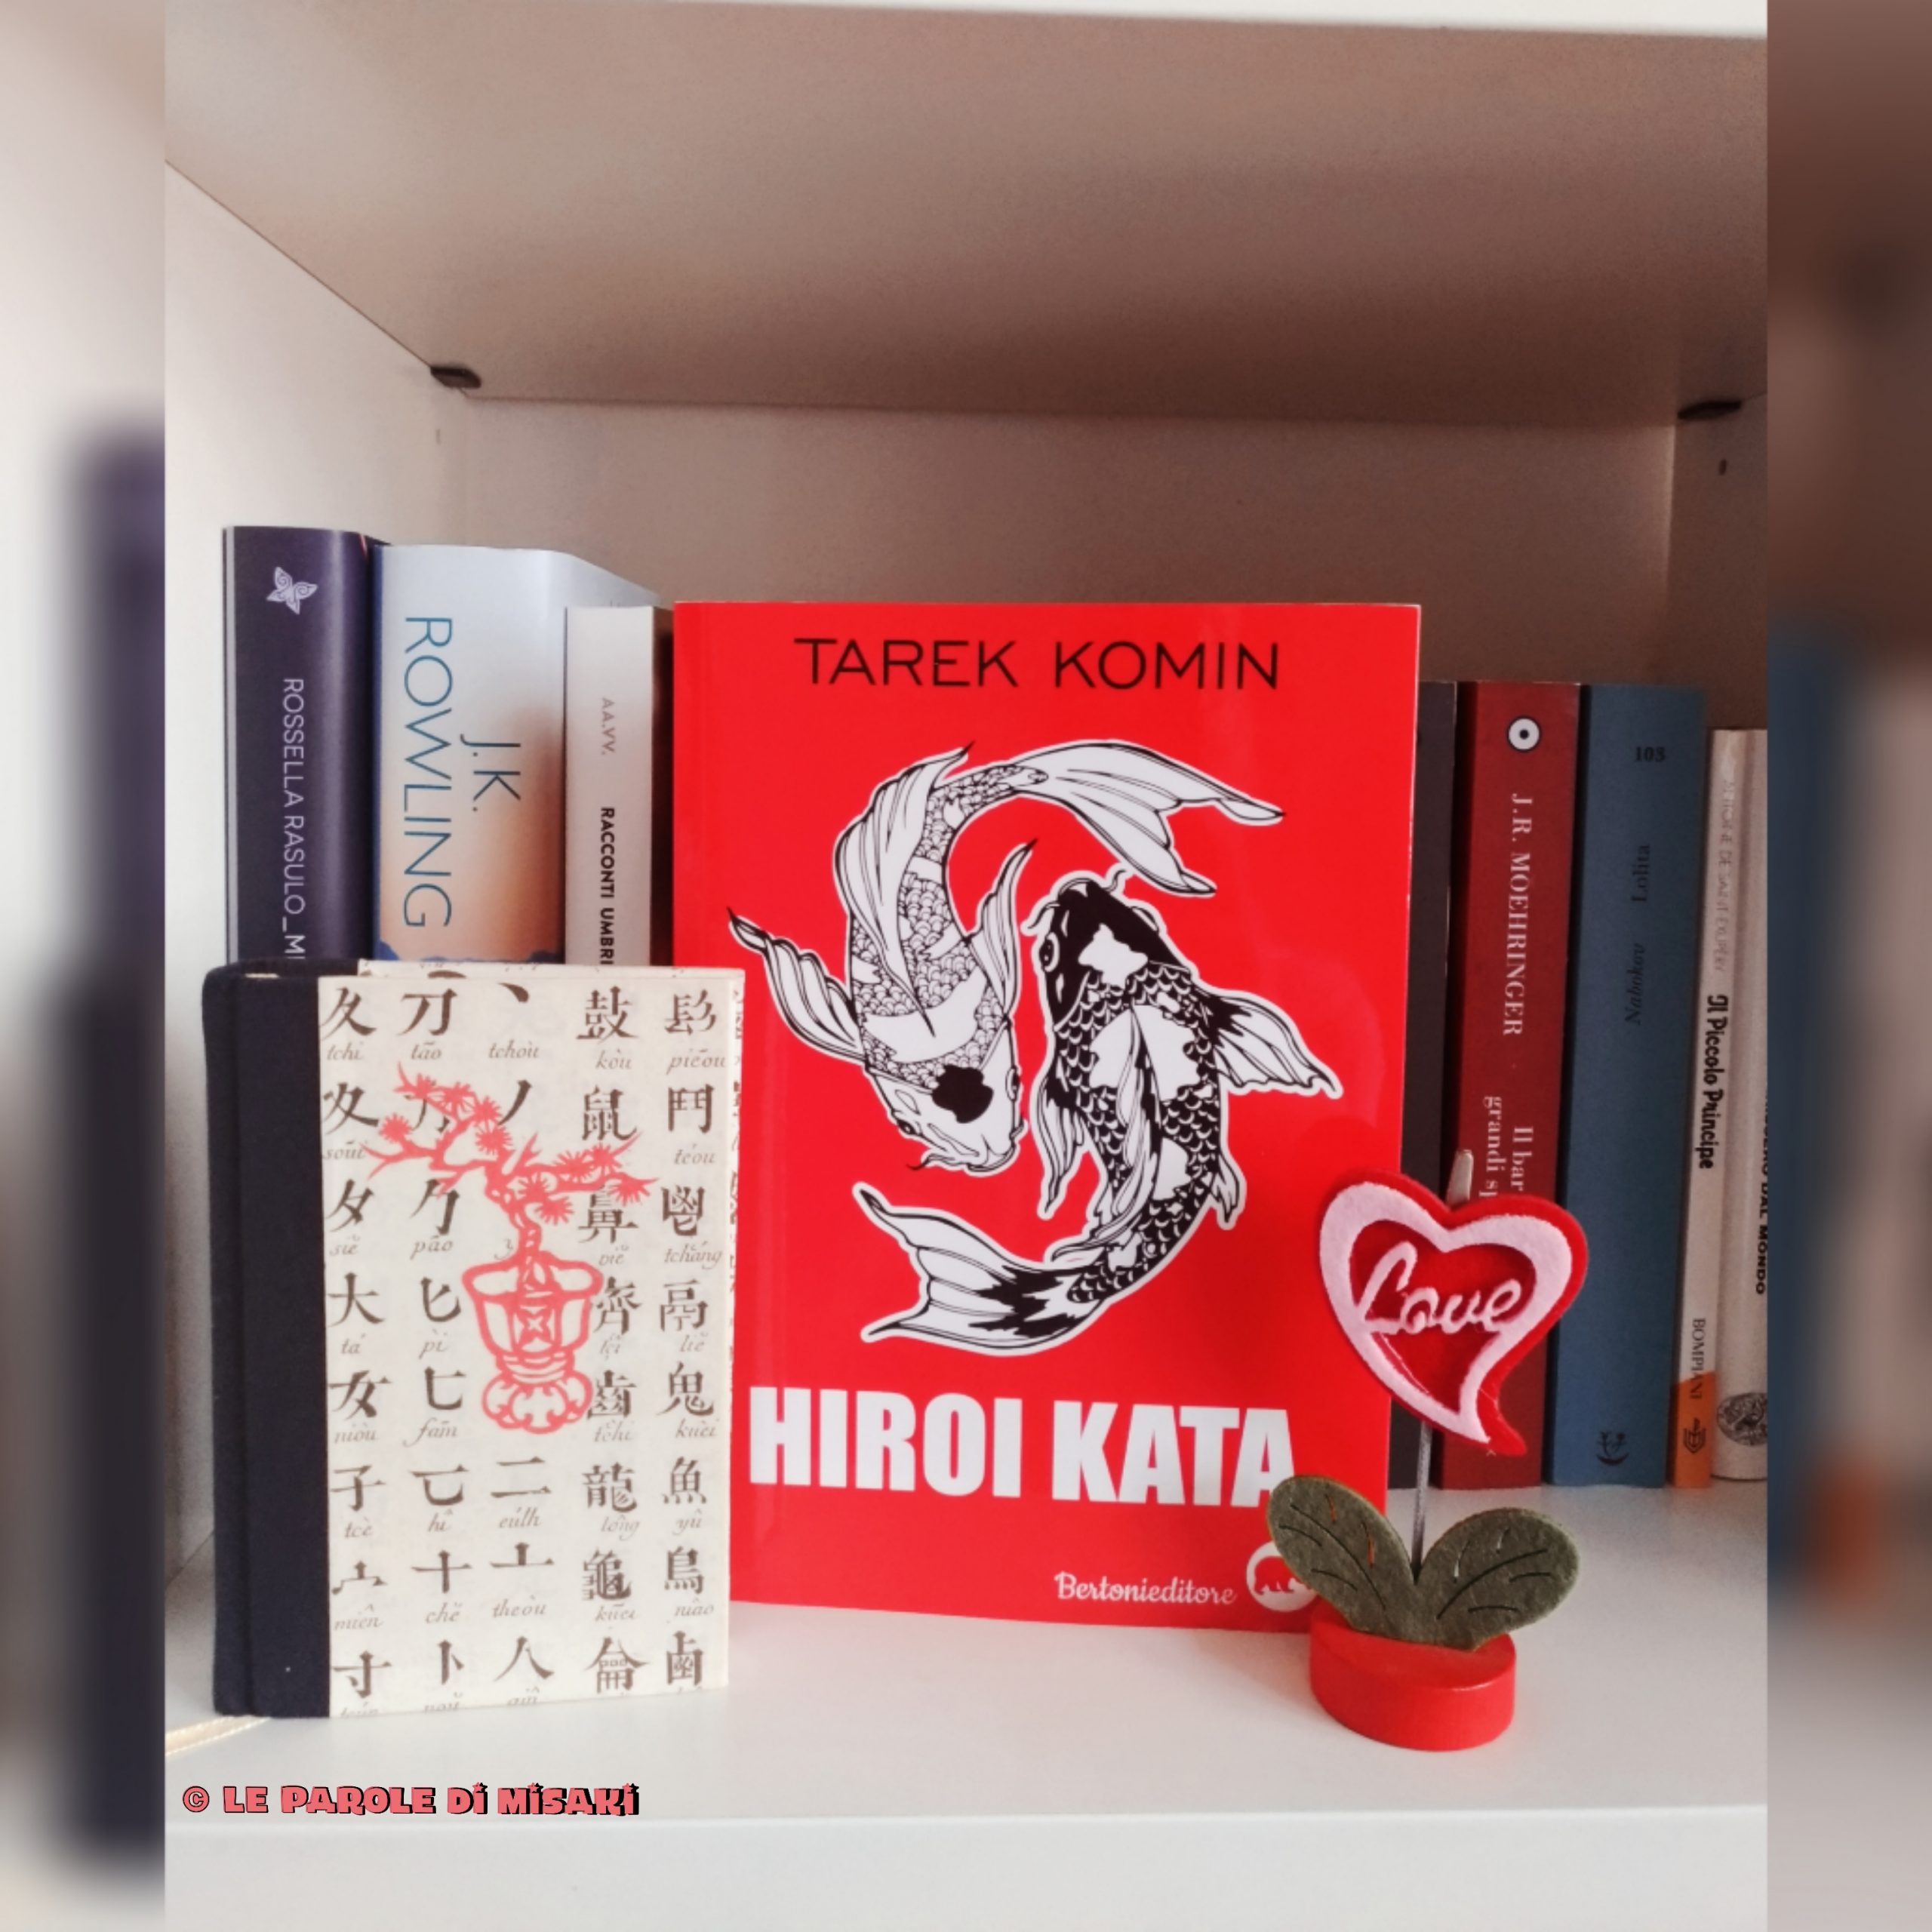 Recensione: “Hiroi Kata” di Tarek Komin